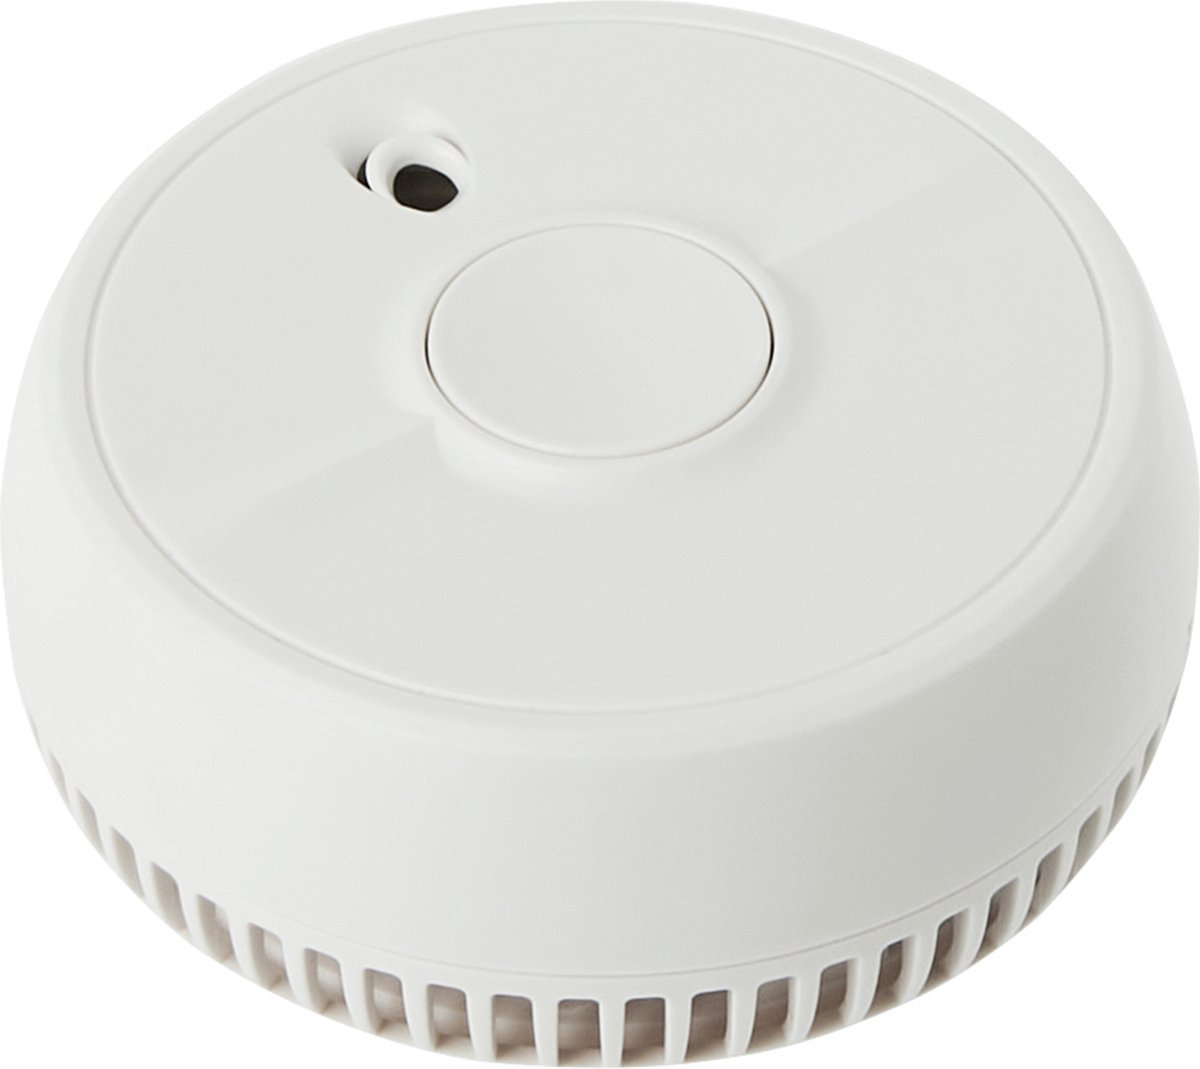 AngelEye Optische Rookmelder SA410 door FireAngel - Veiligheid in Huis